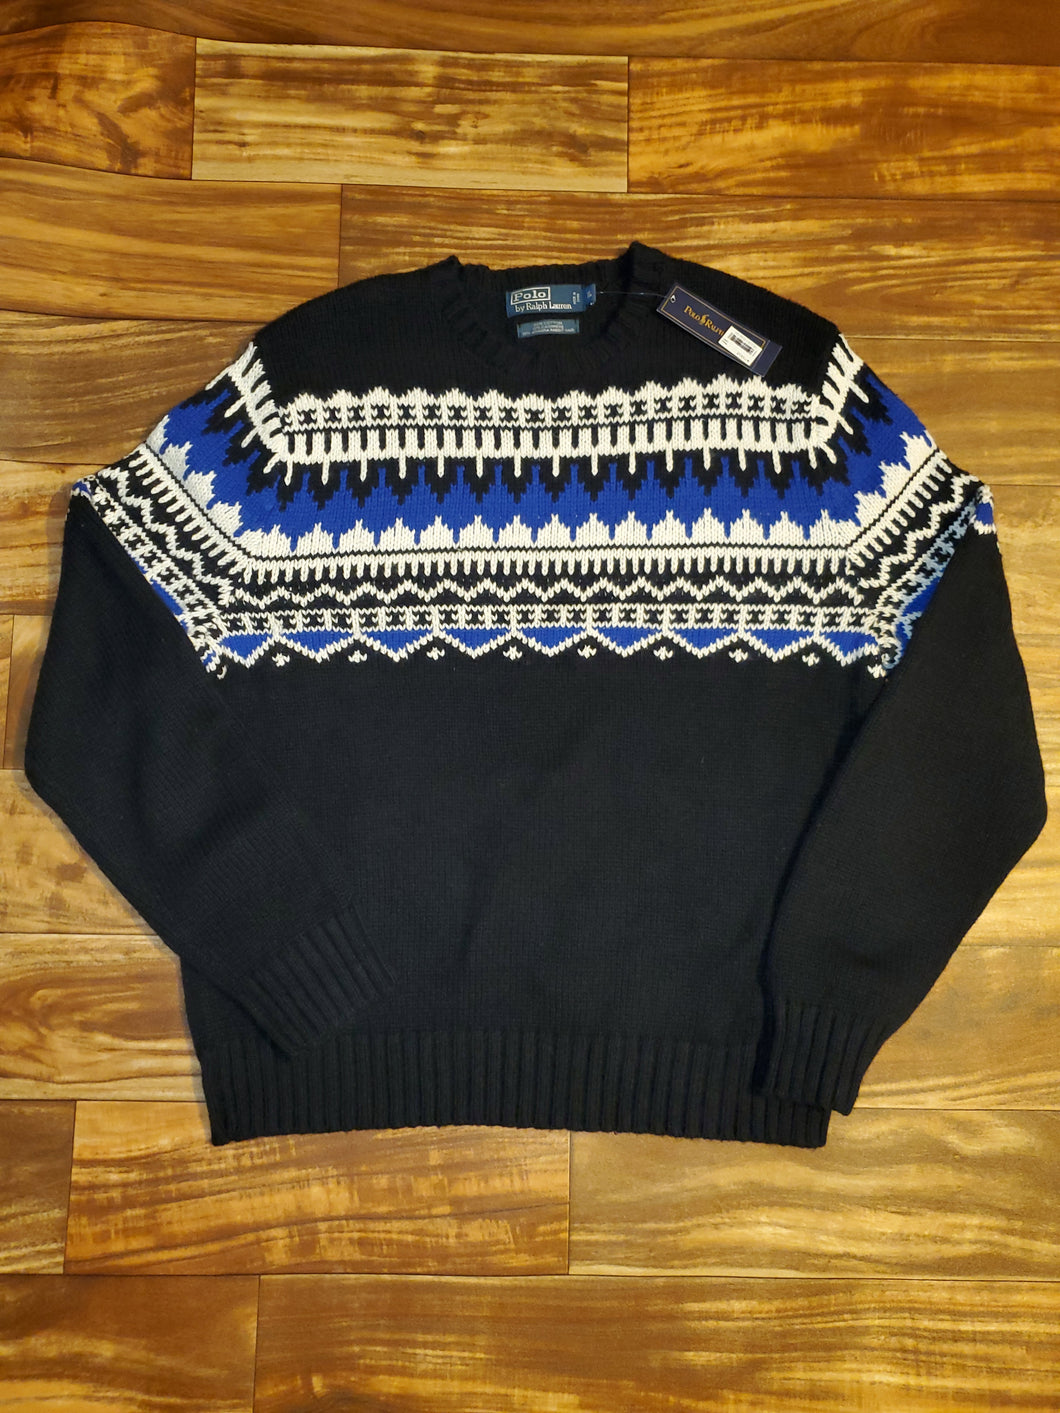 XL - NEW Ralph Lauren Sweater *Retail $265*